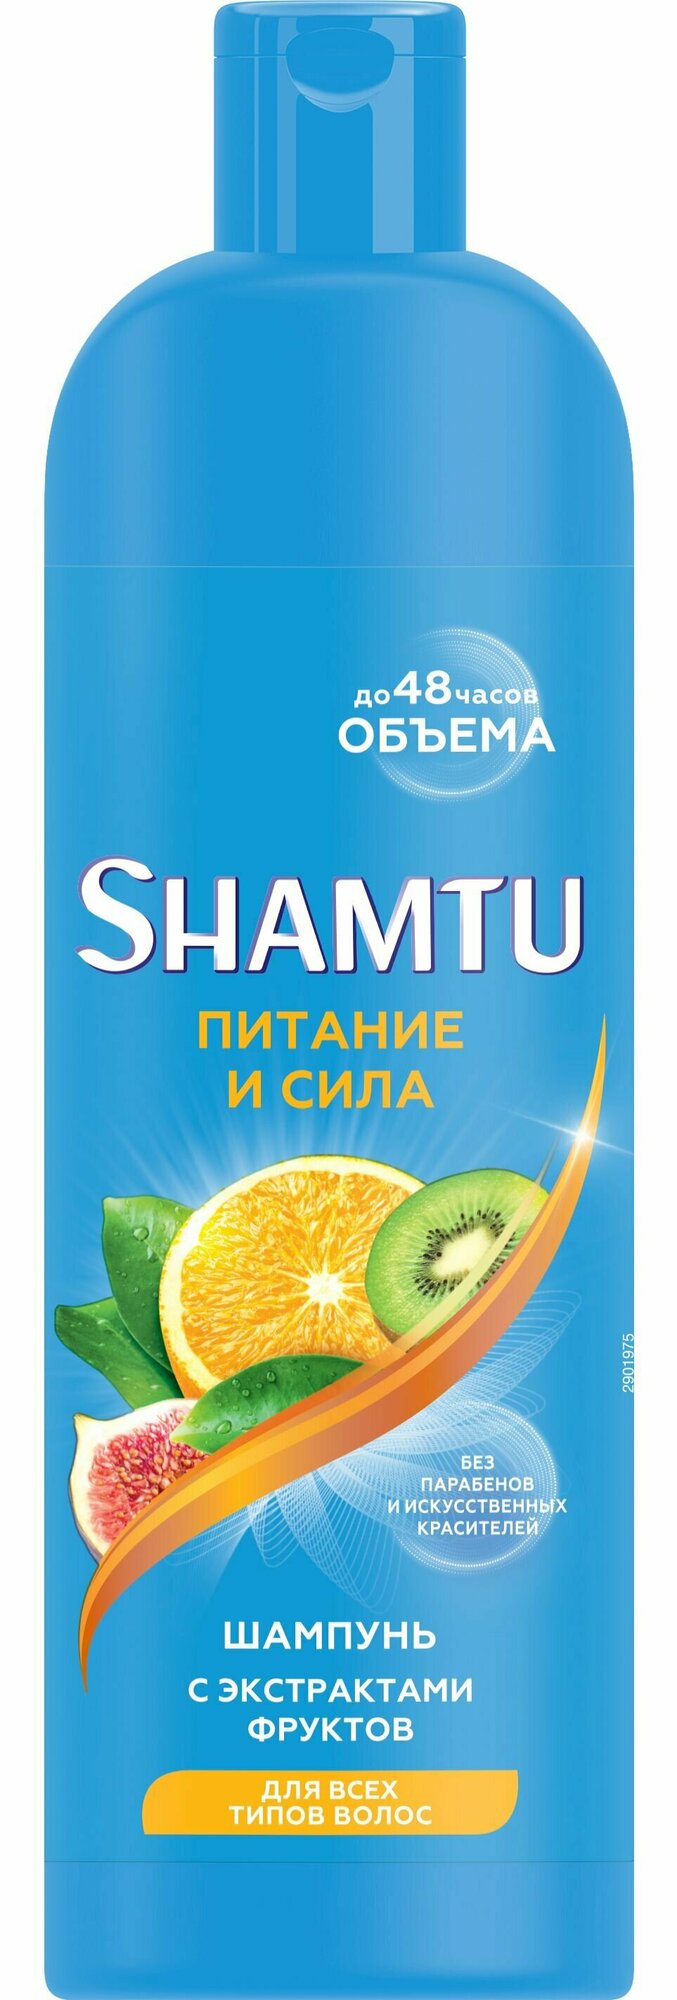 Shamtu Шампунь Питание и сила с экстрактами фруктов, 500 мл, 2 шт.